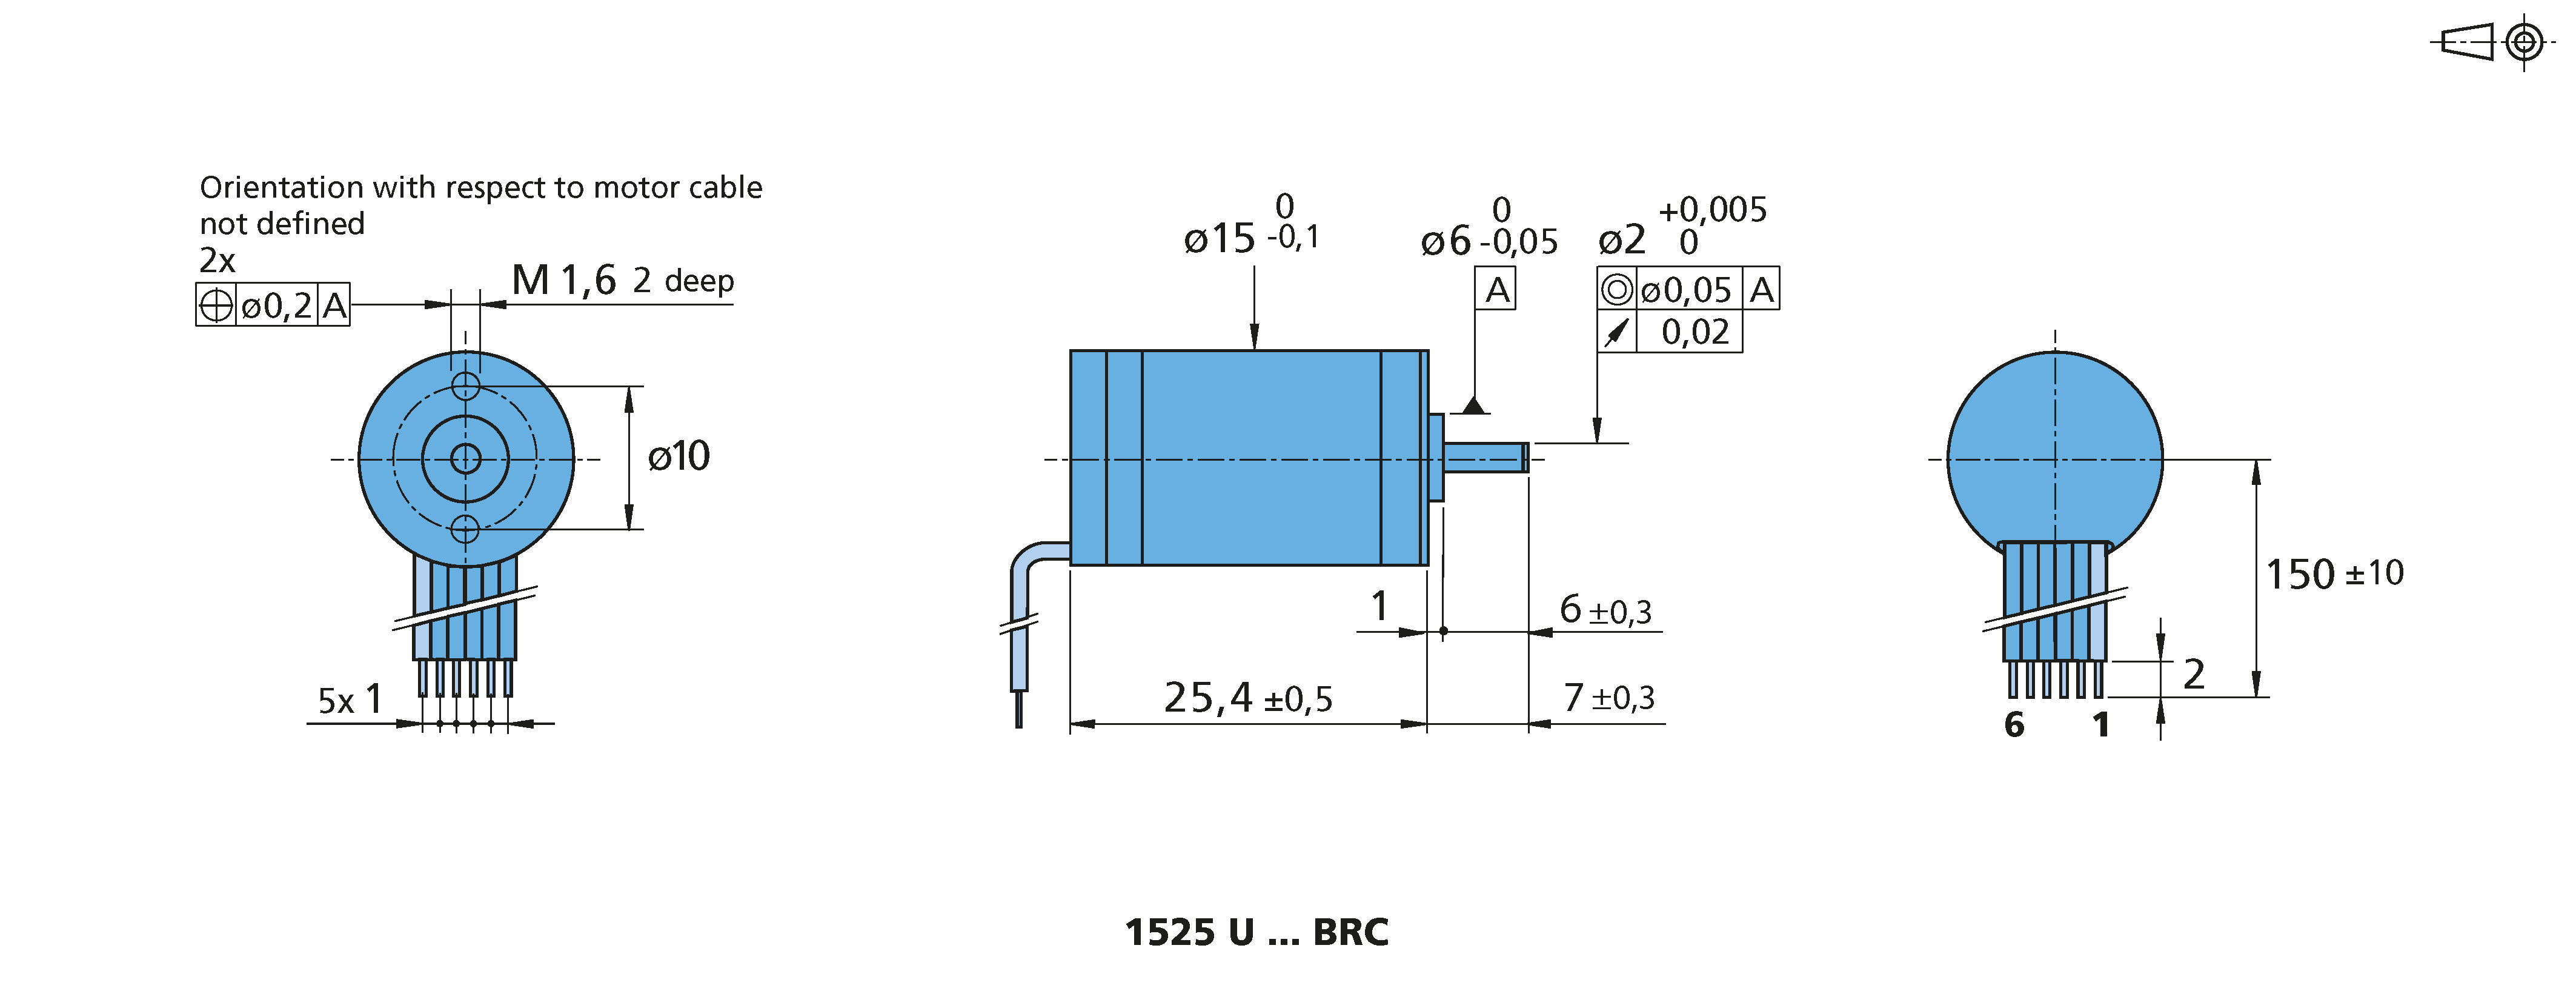 電子回路内蔵モータ Series 1525 ... BRC